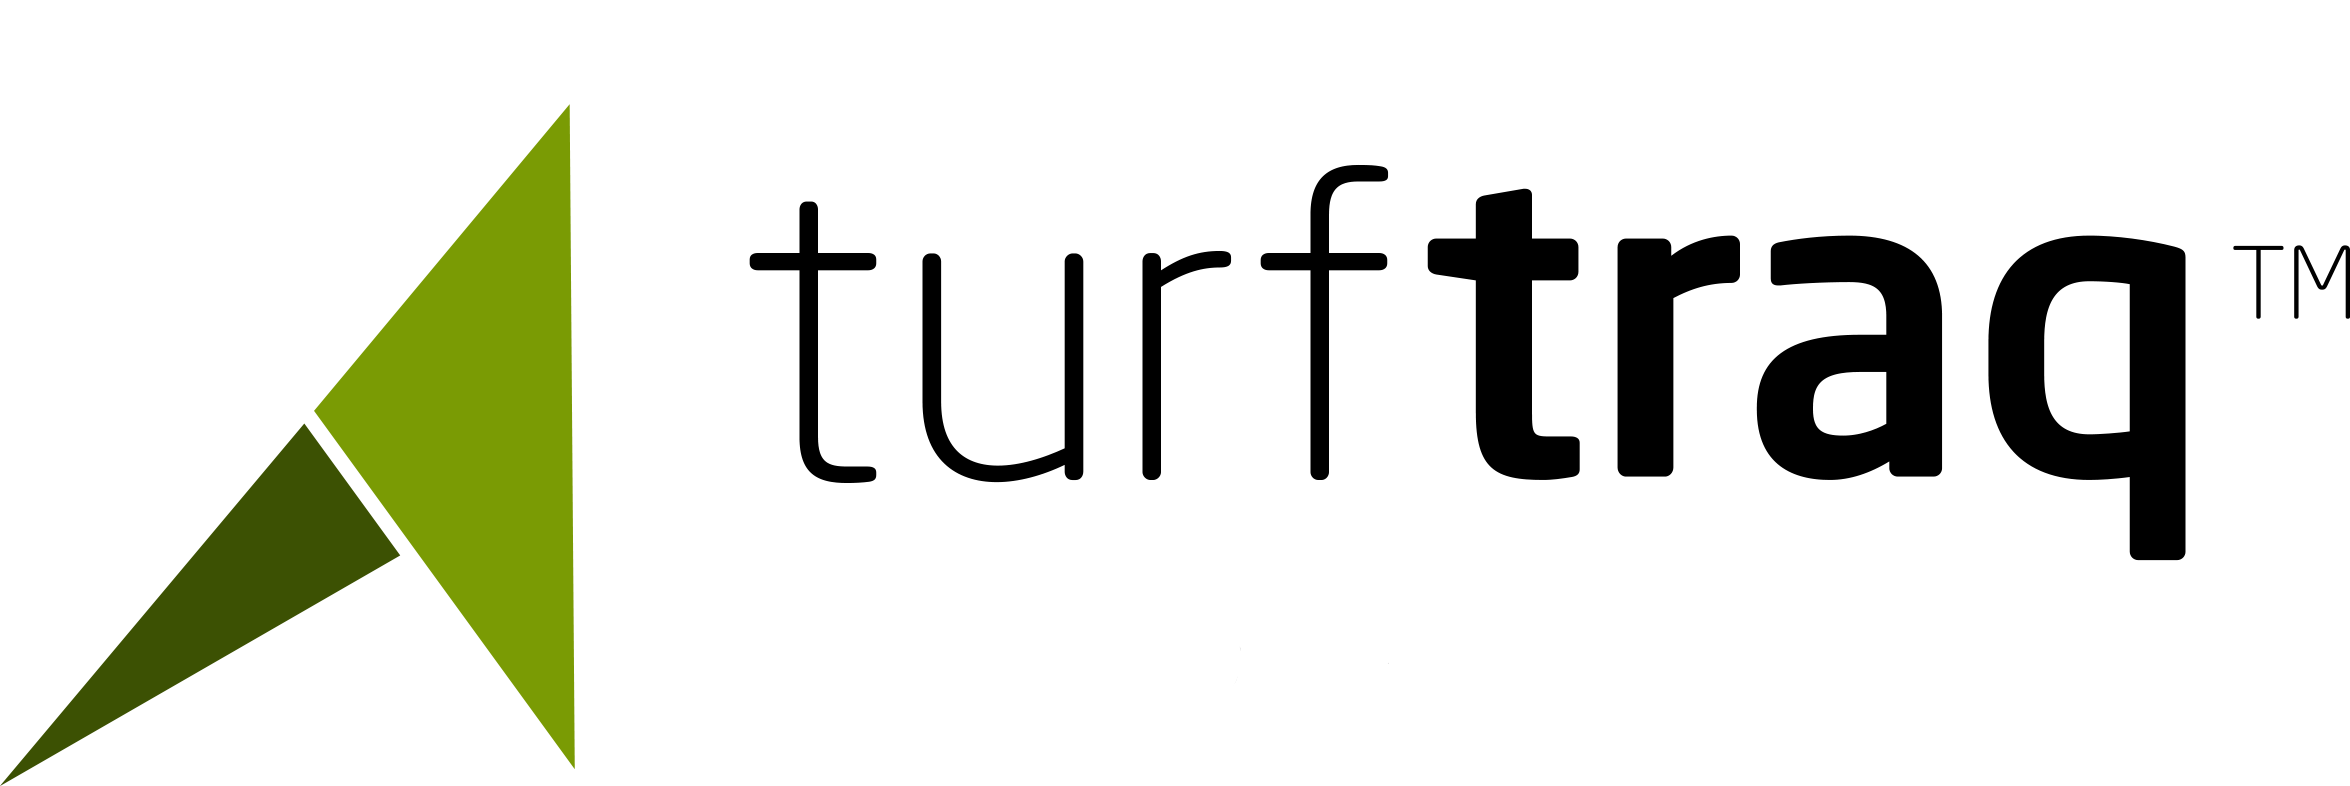 Turftraq_black_logo